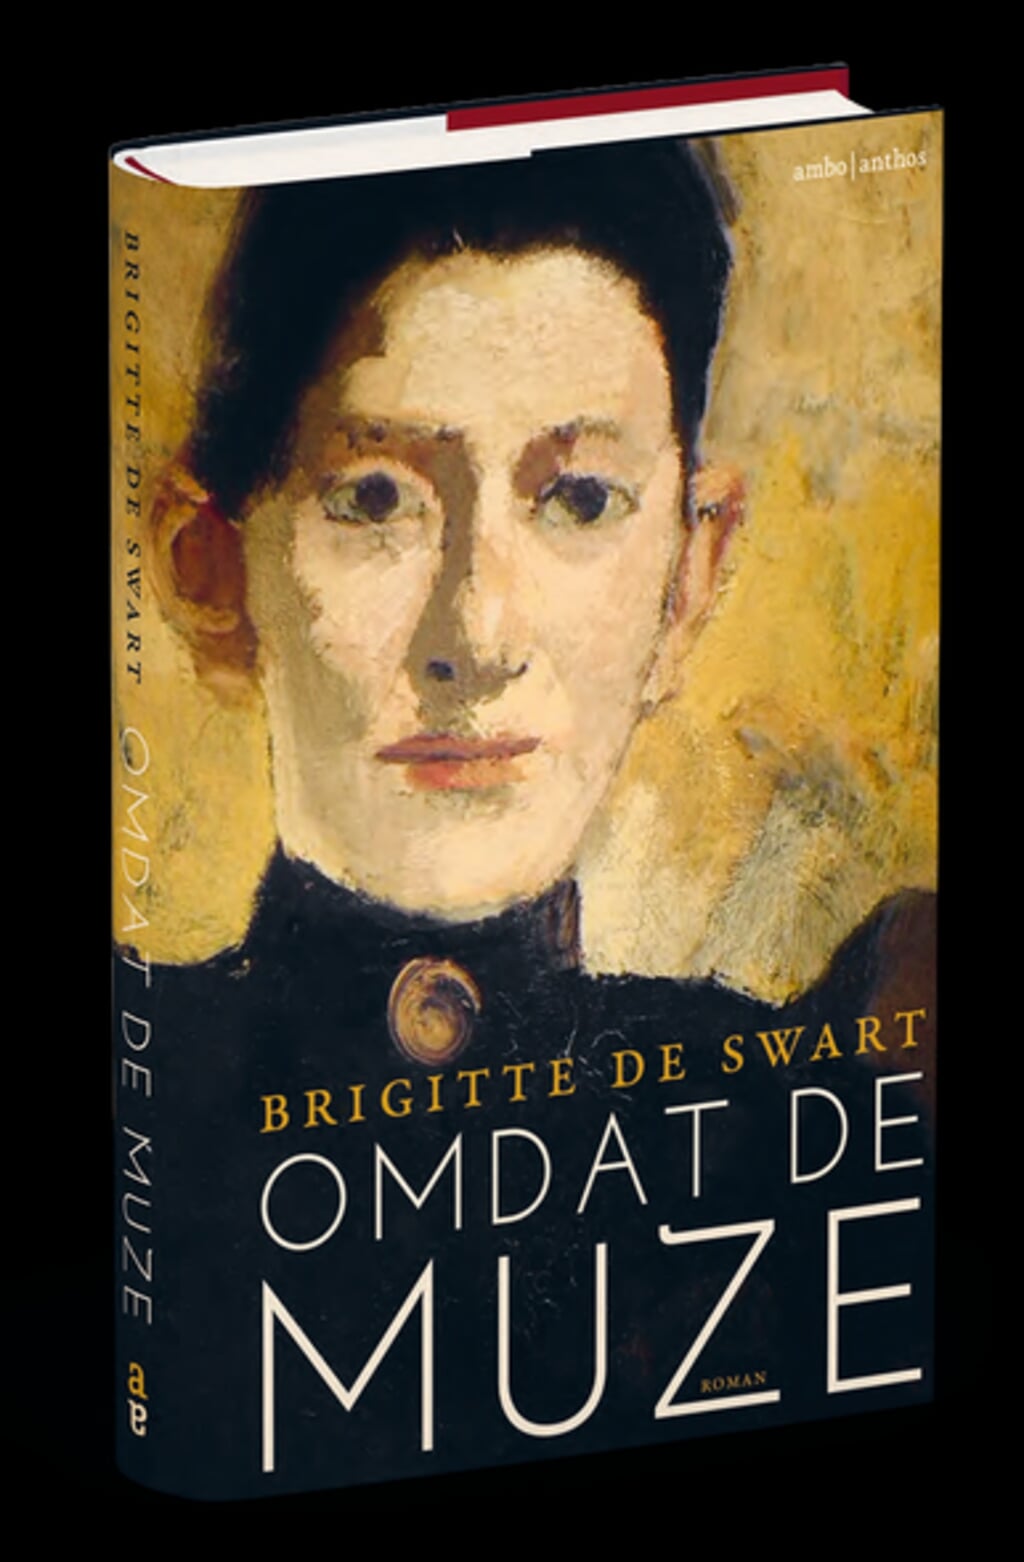 Omslag van het boek 'Omdat de muze' waarmee Brigitte de Swart uit Den Bosch debuteert. 